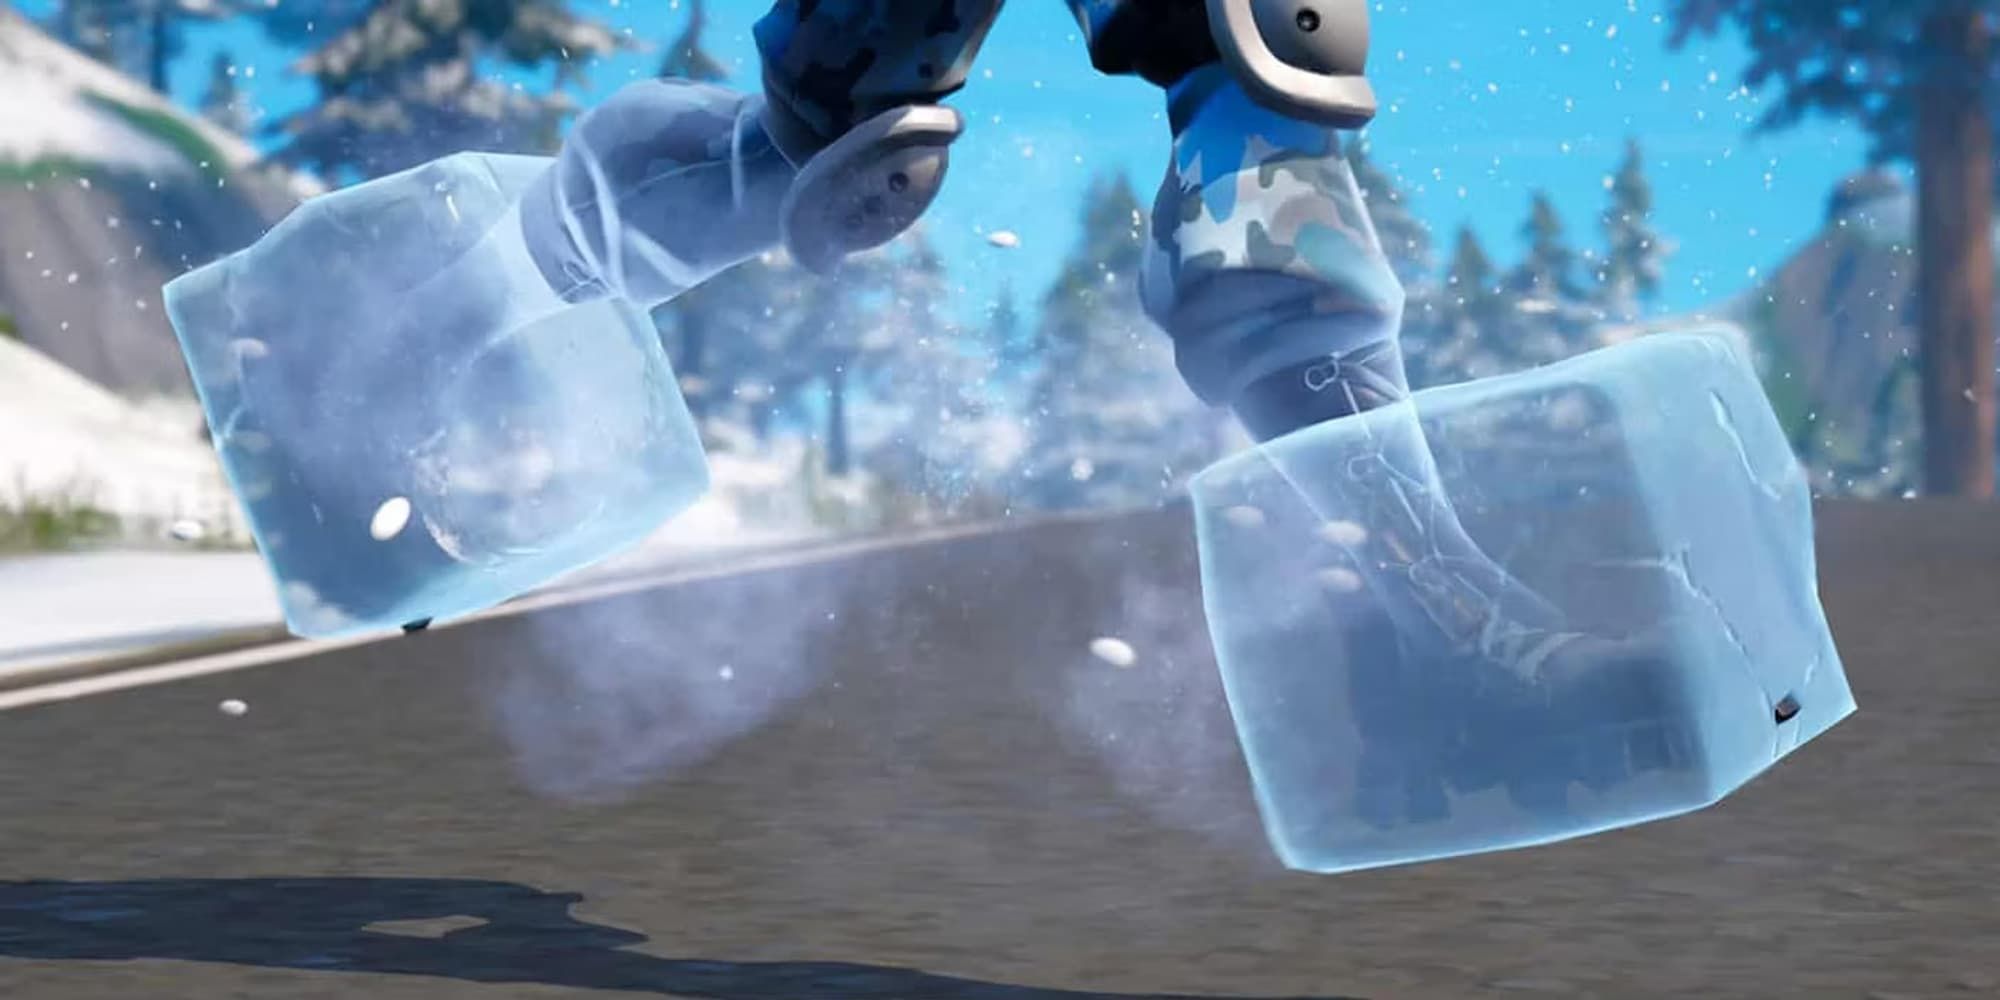 Frozen feet keep players sliding in the Slide Fortnite LTM.